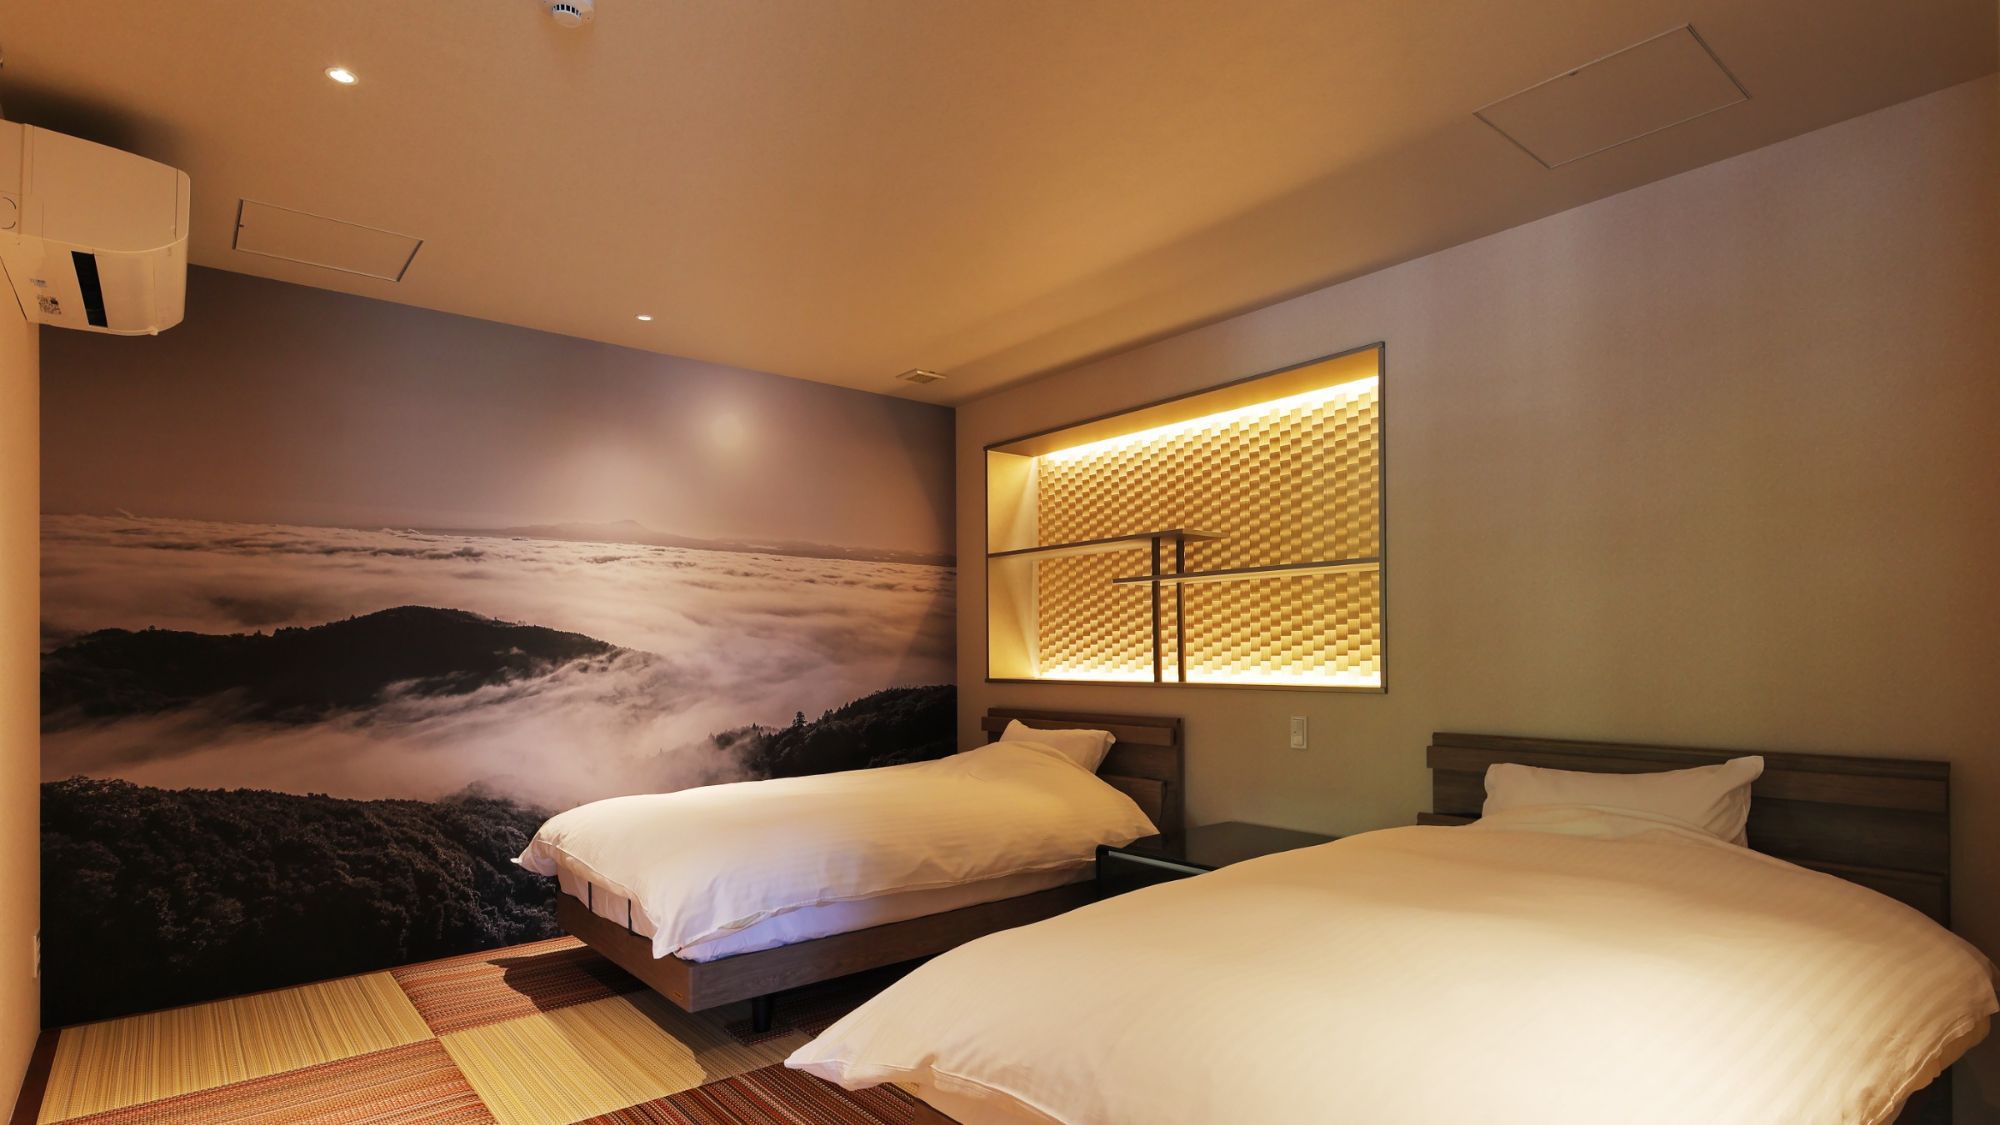 【プレミアムルーム】寝室は最高のリラックス空間♪セミダブルのリクライニングベッドをご用意しております